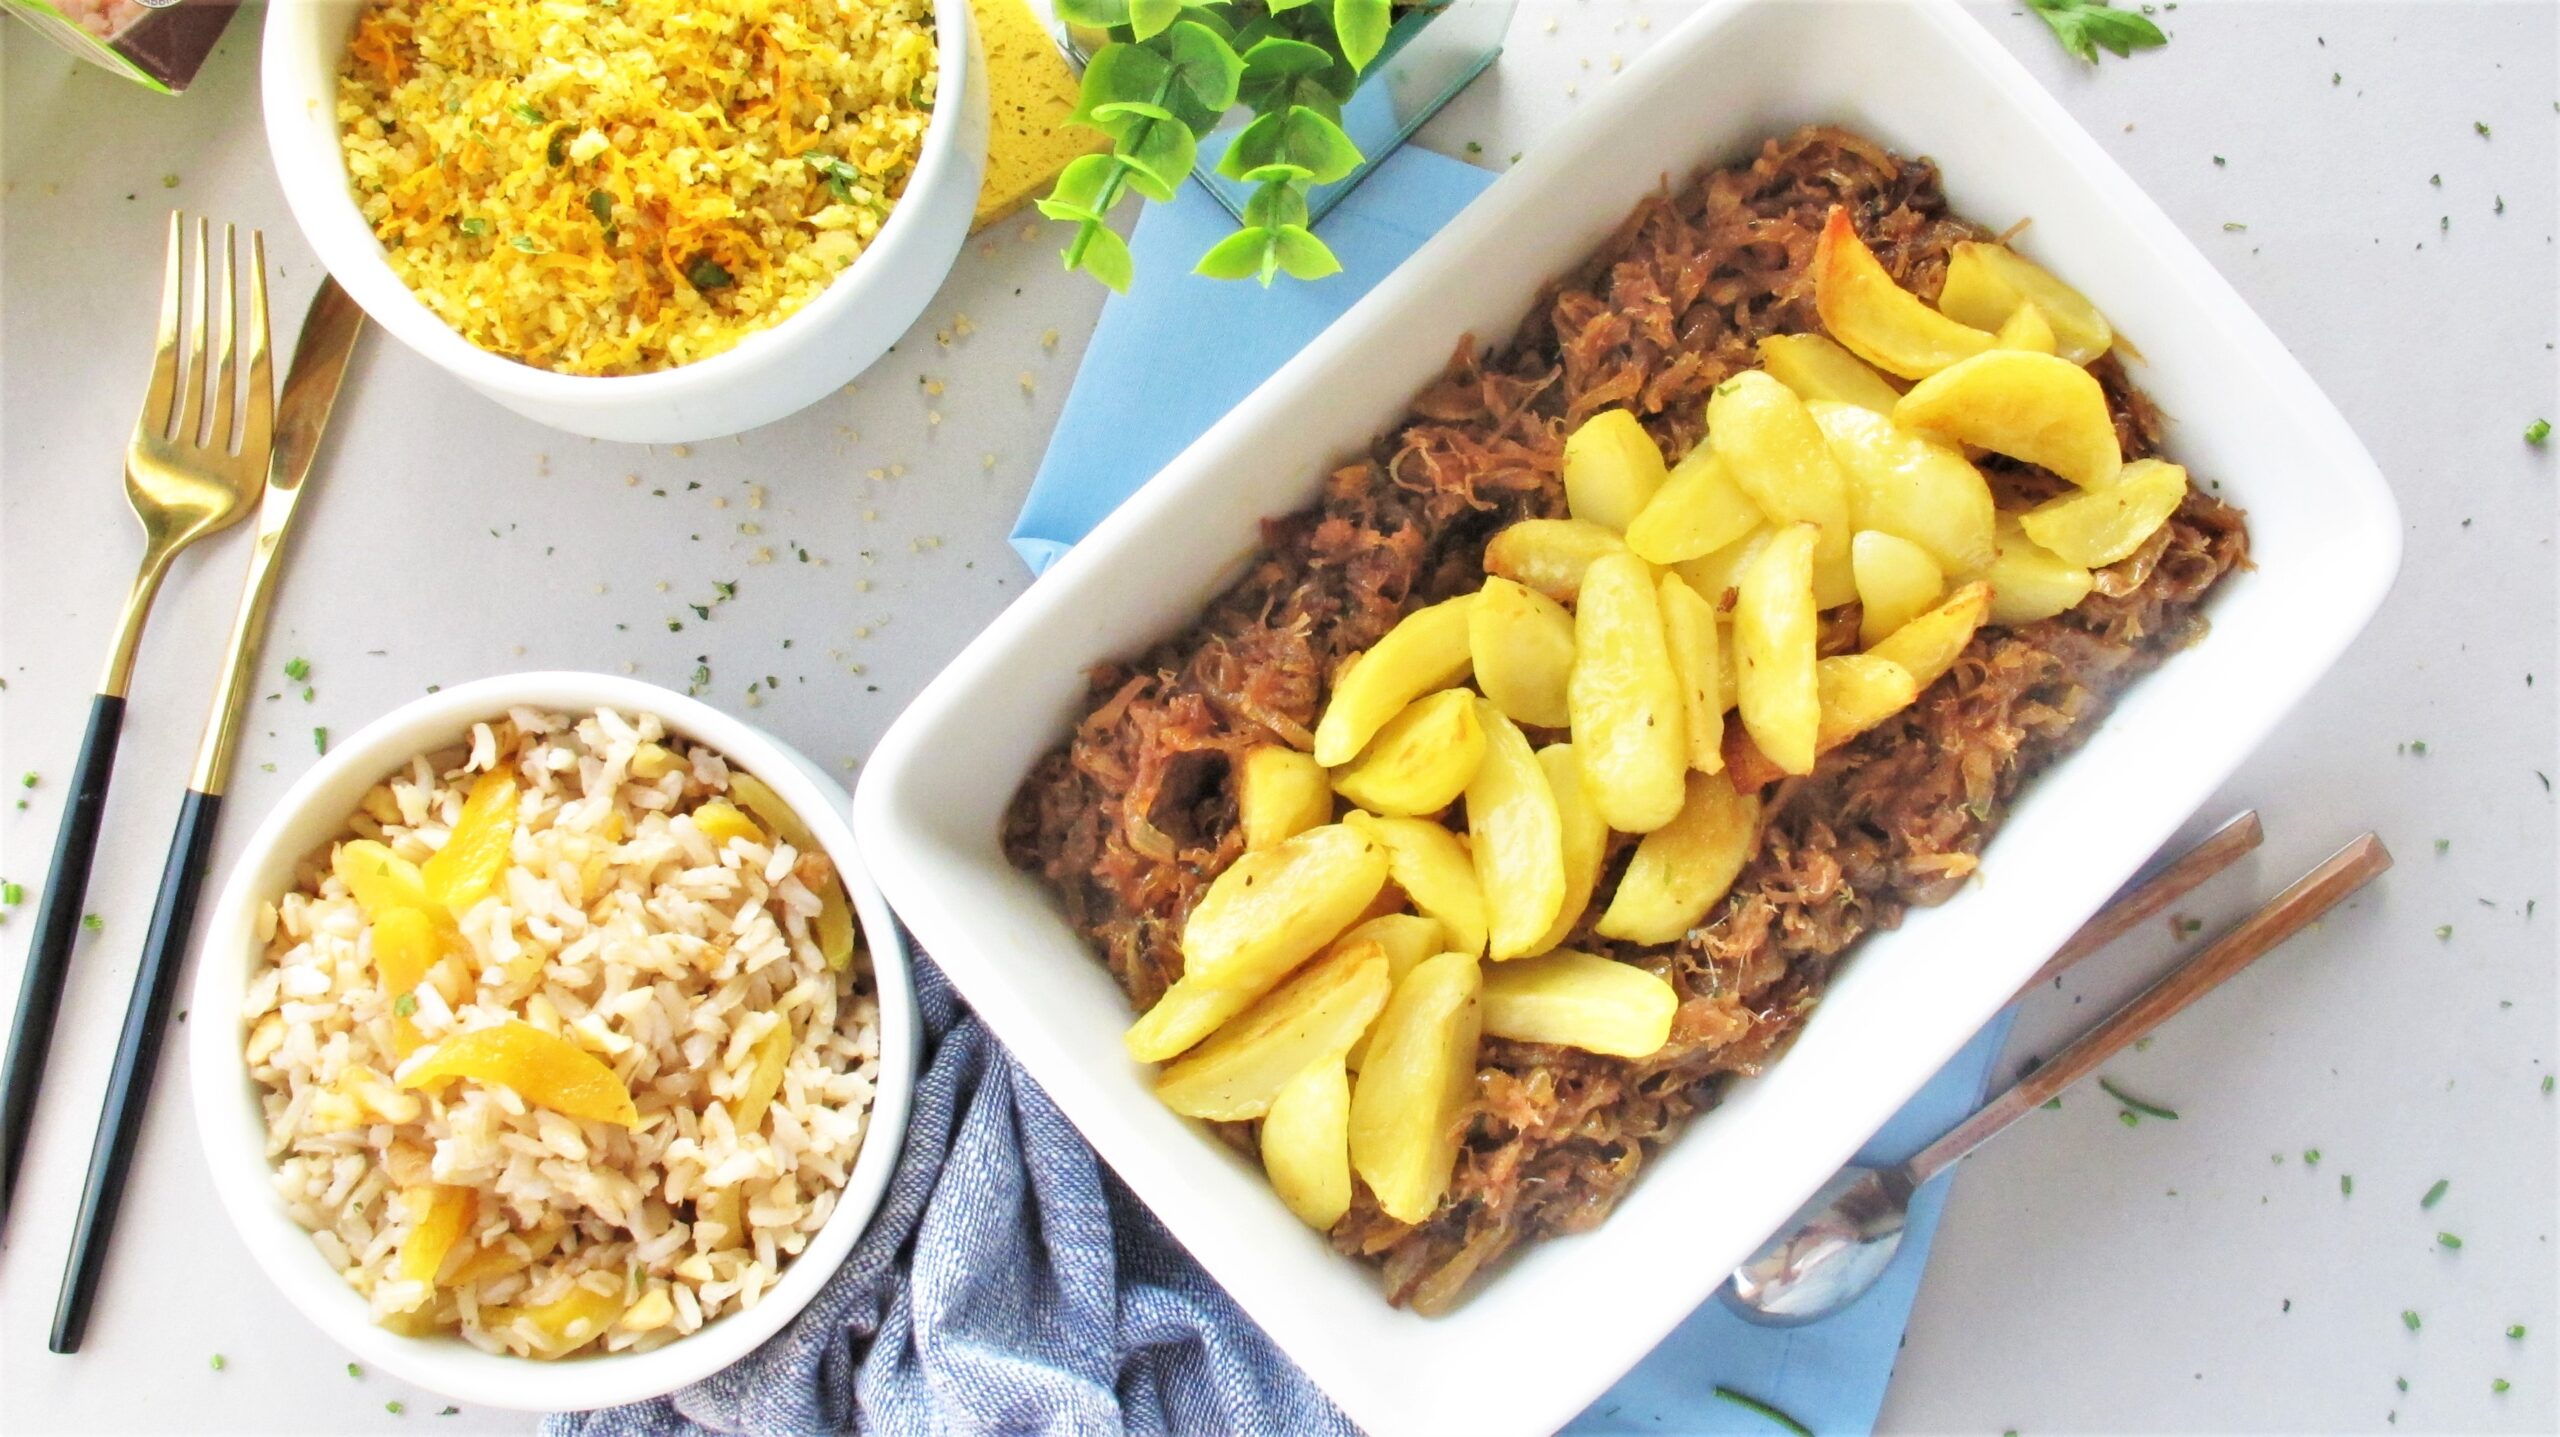 Carne de porco, arroz e grão de bico: conheça receitas de Páscoa com ingredientes que não levam o bacalhau como estrela do prato